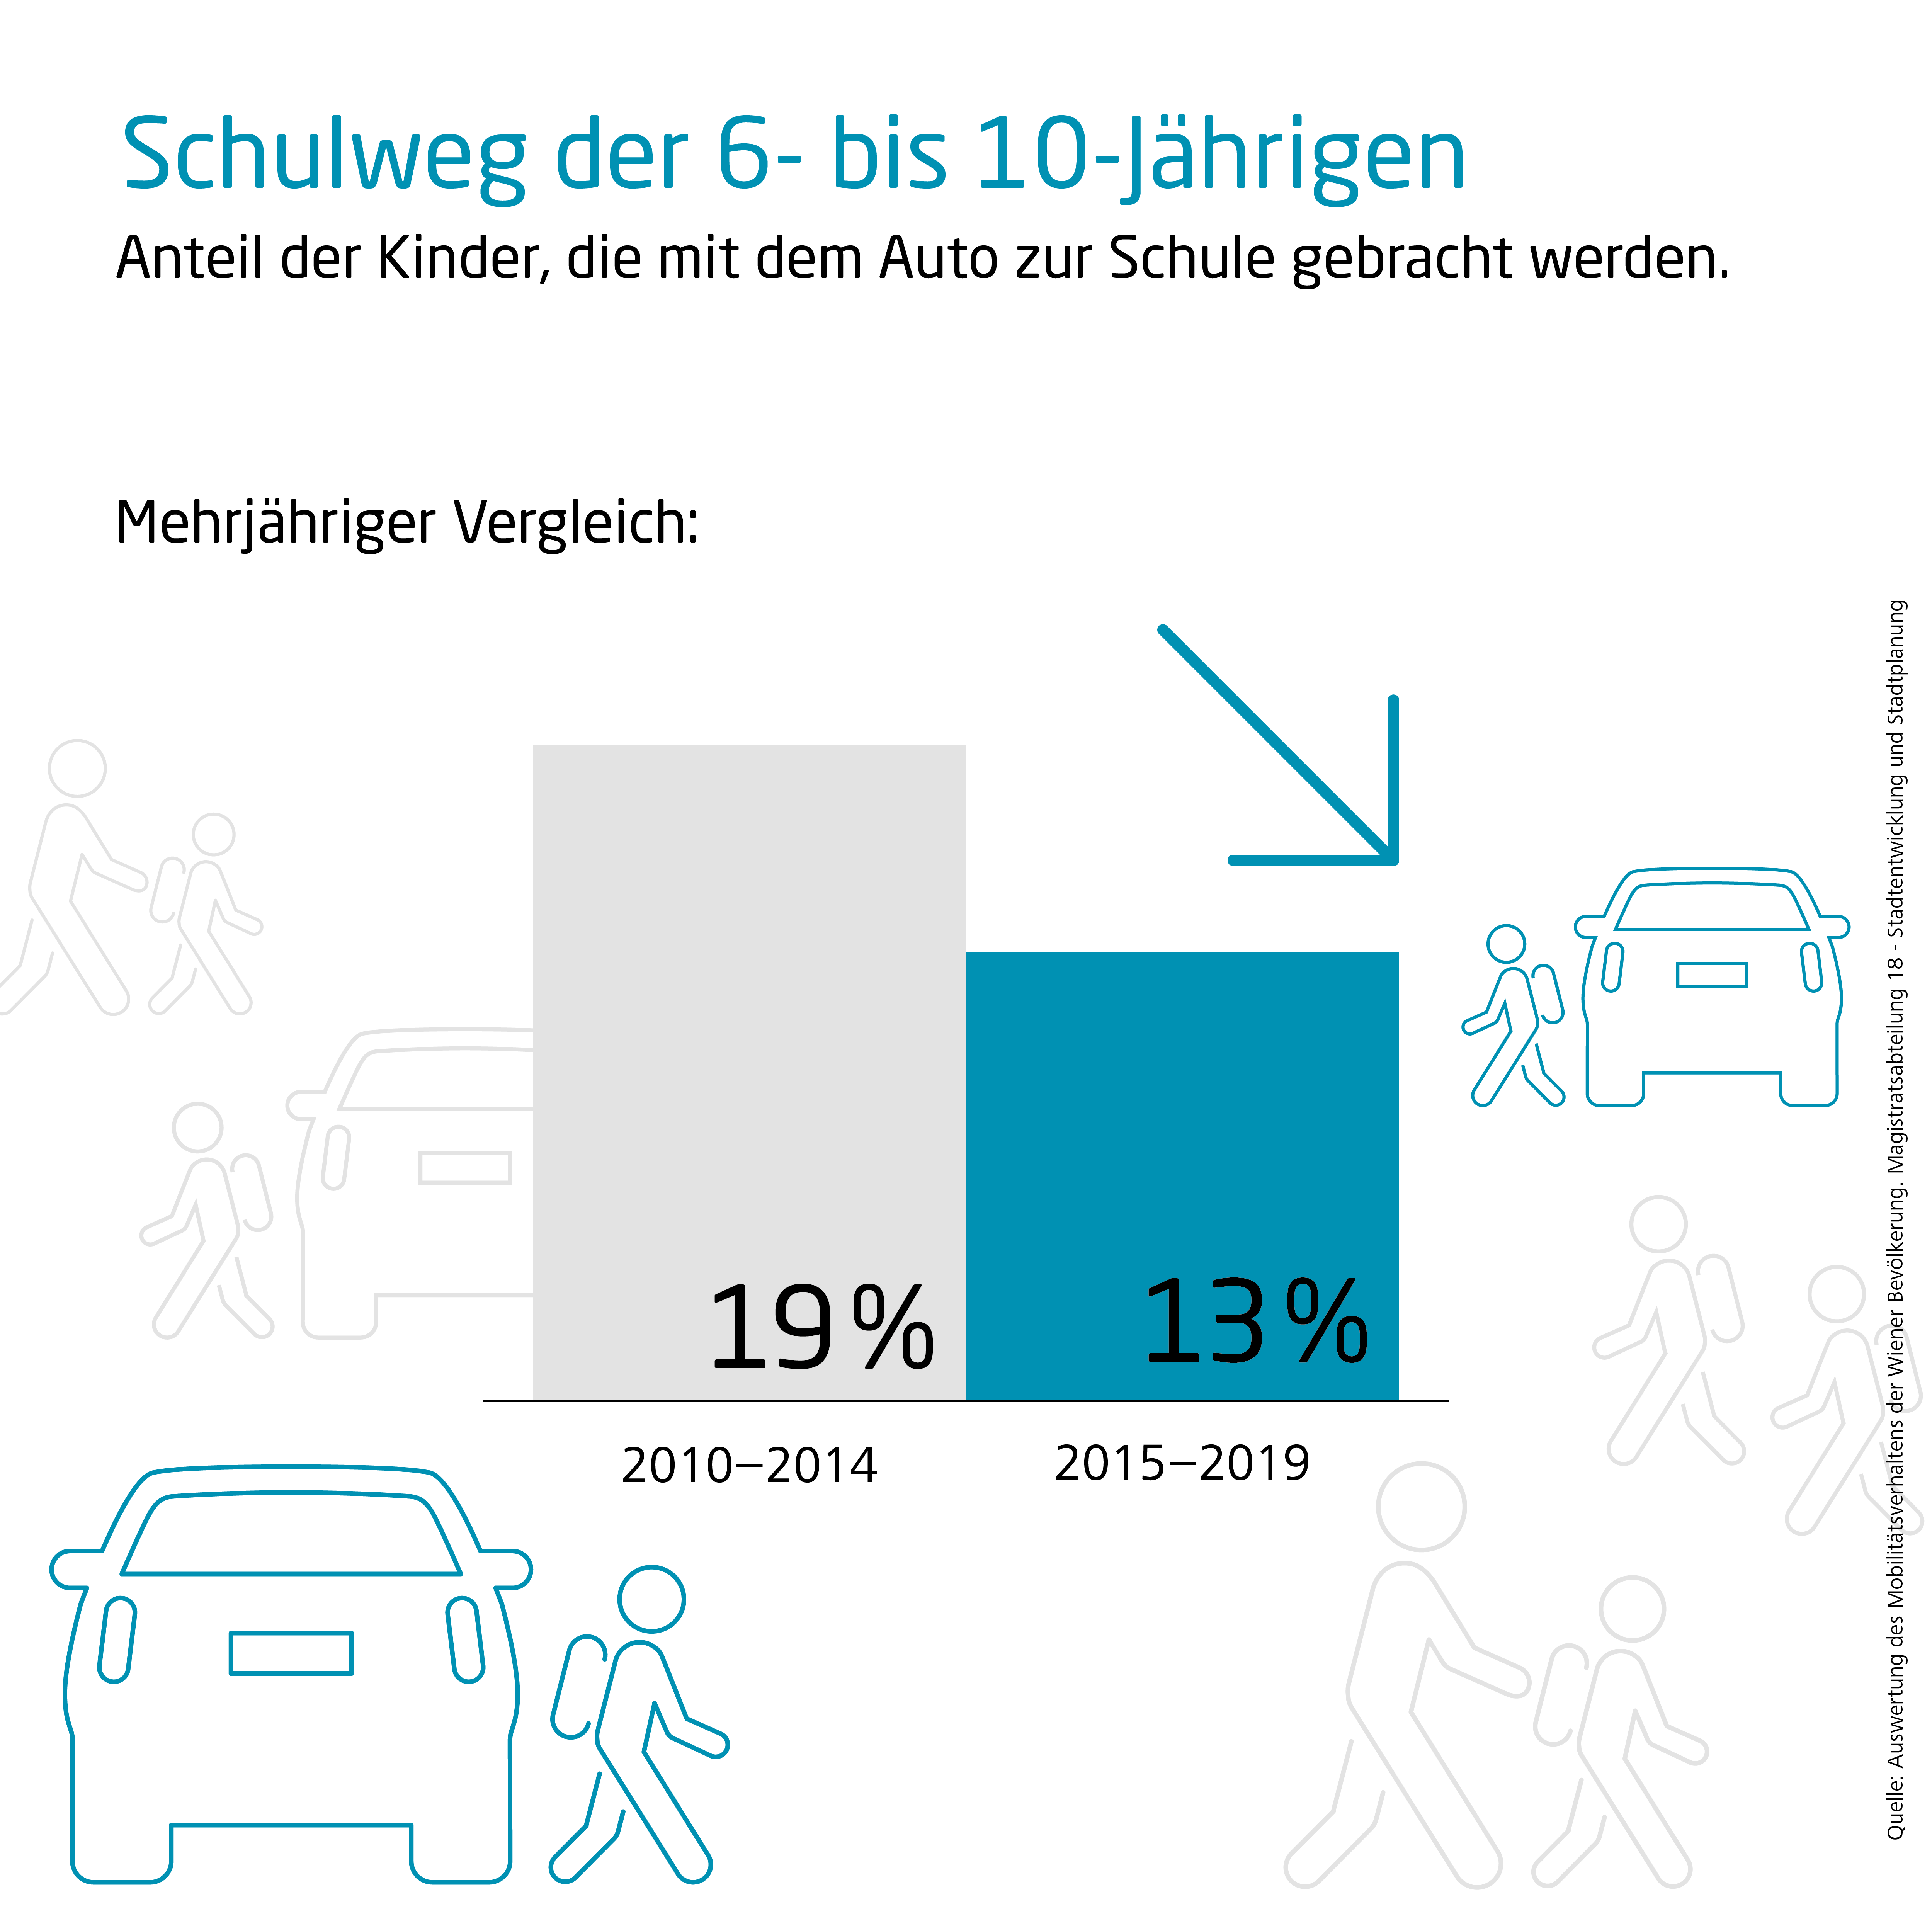 Grafik die darstellt wie viele Kinder mit dem Auto zur Schule gebracht werden, verglichen werden die Zeiträume 2010 bis 2014 und 2015 bis 2019. Der Anteil ist von 19 auf 13% gesunken.